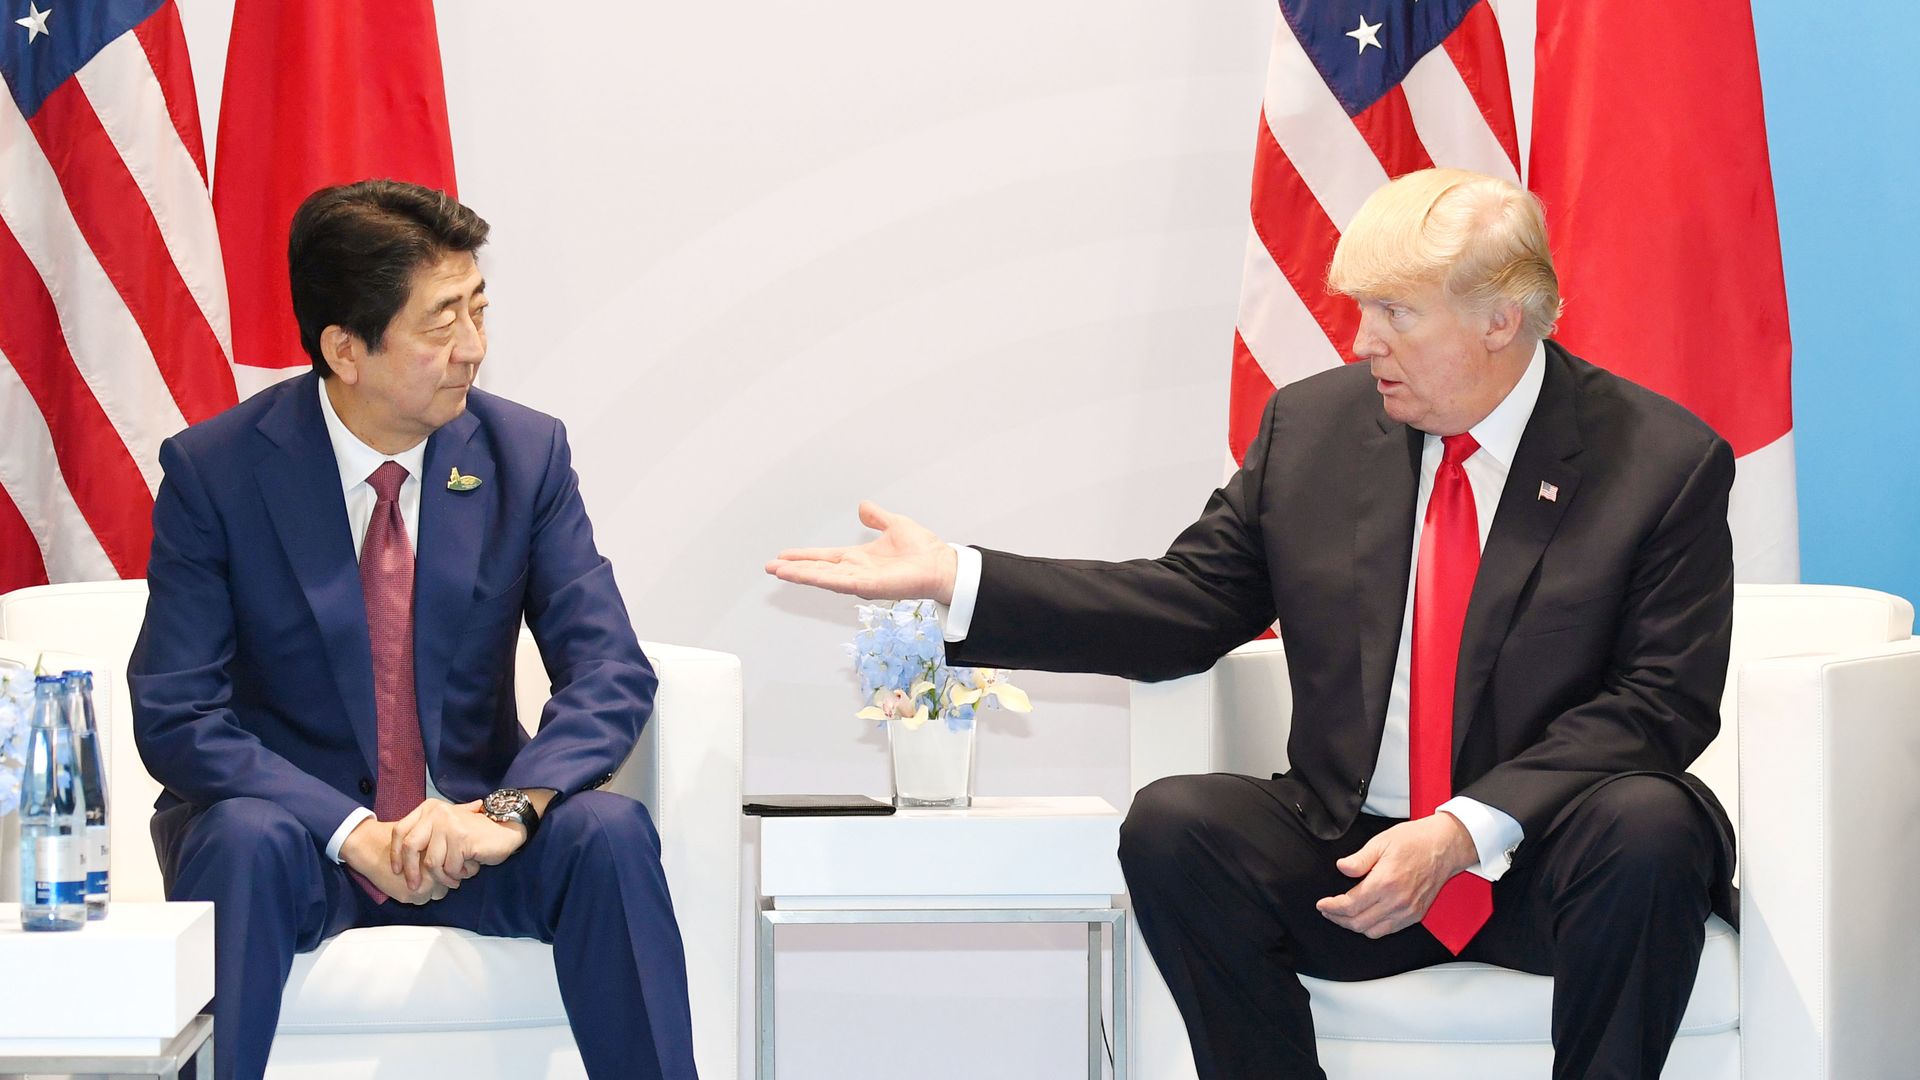 Trump gestures to Abe